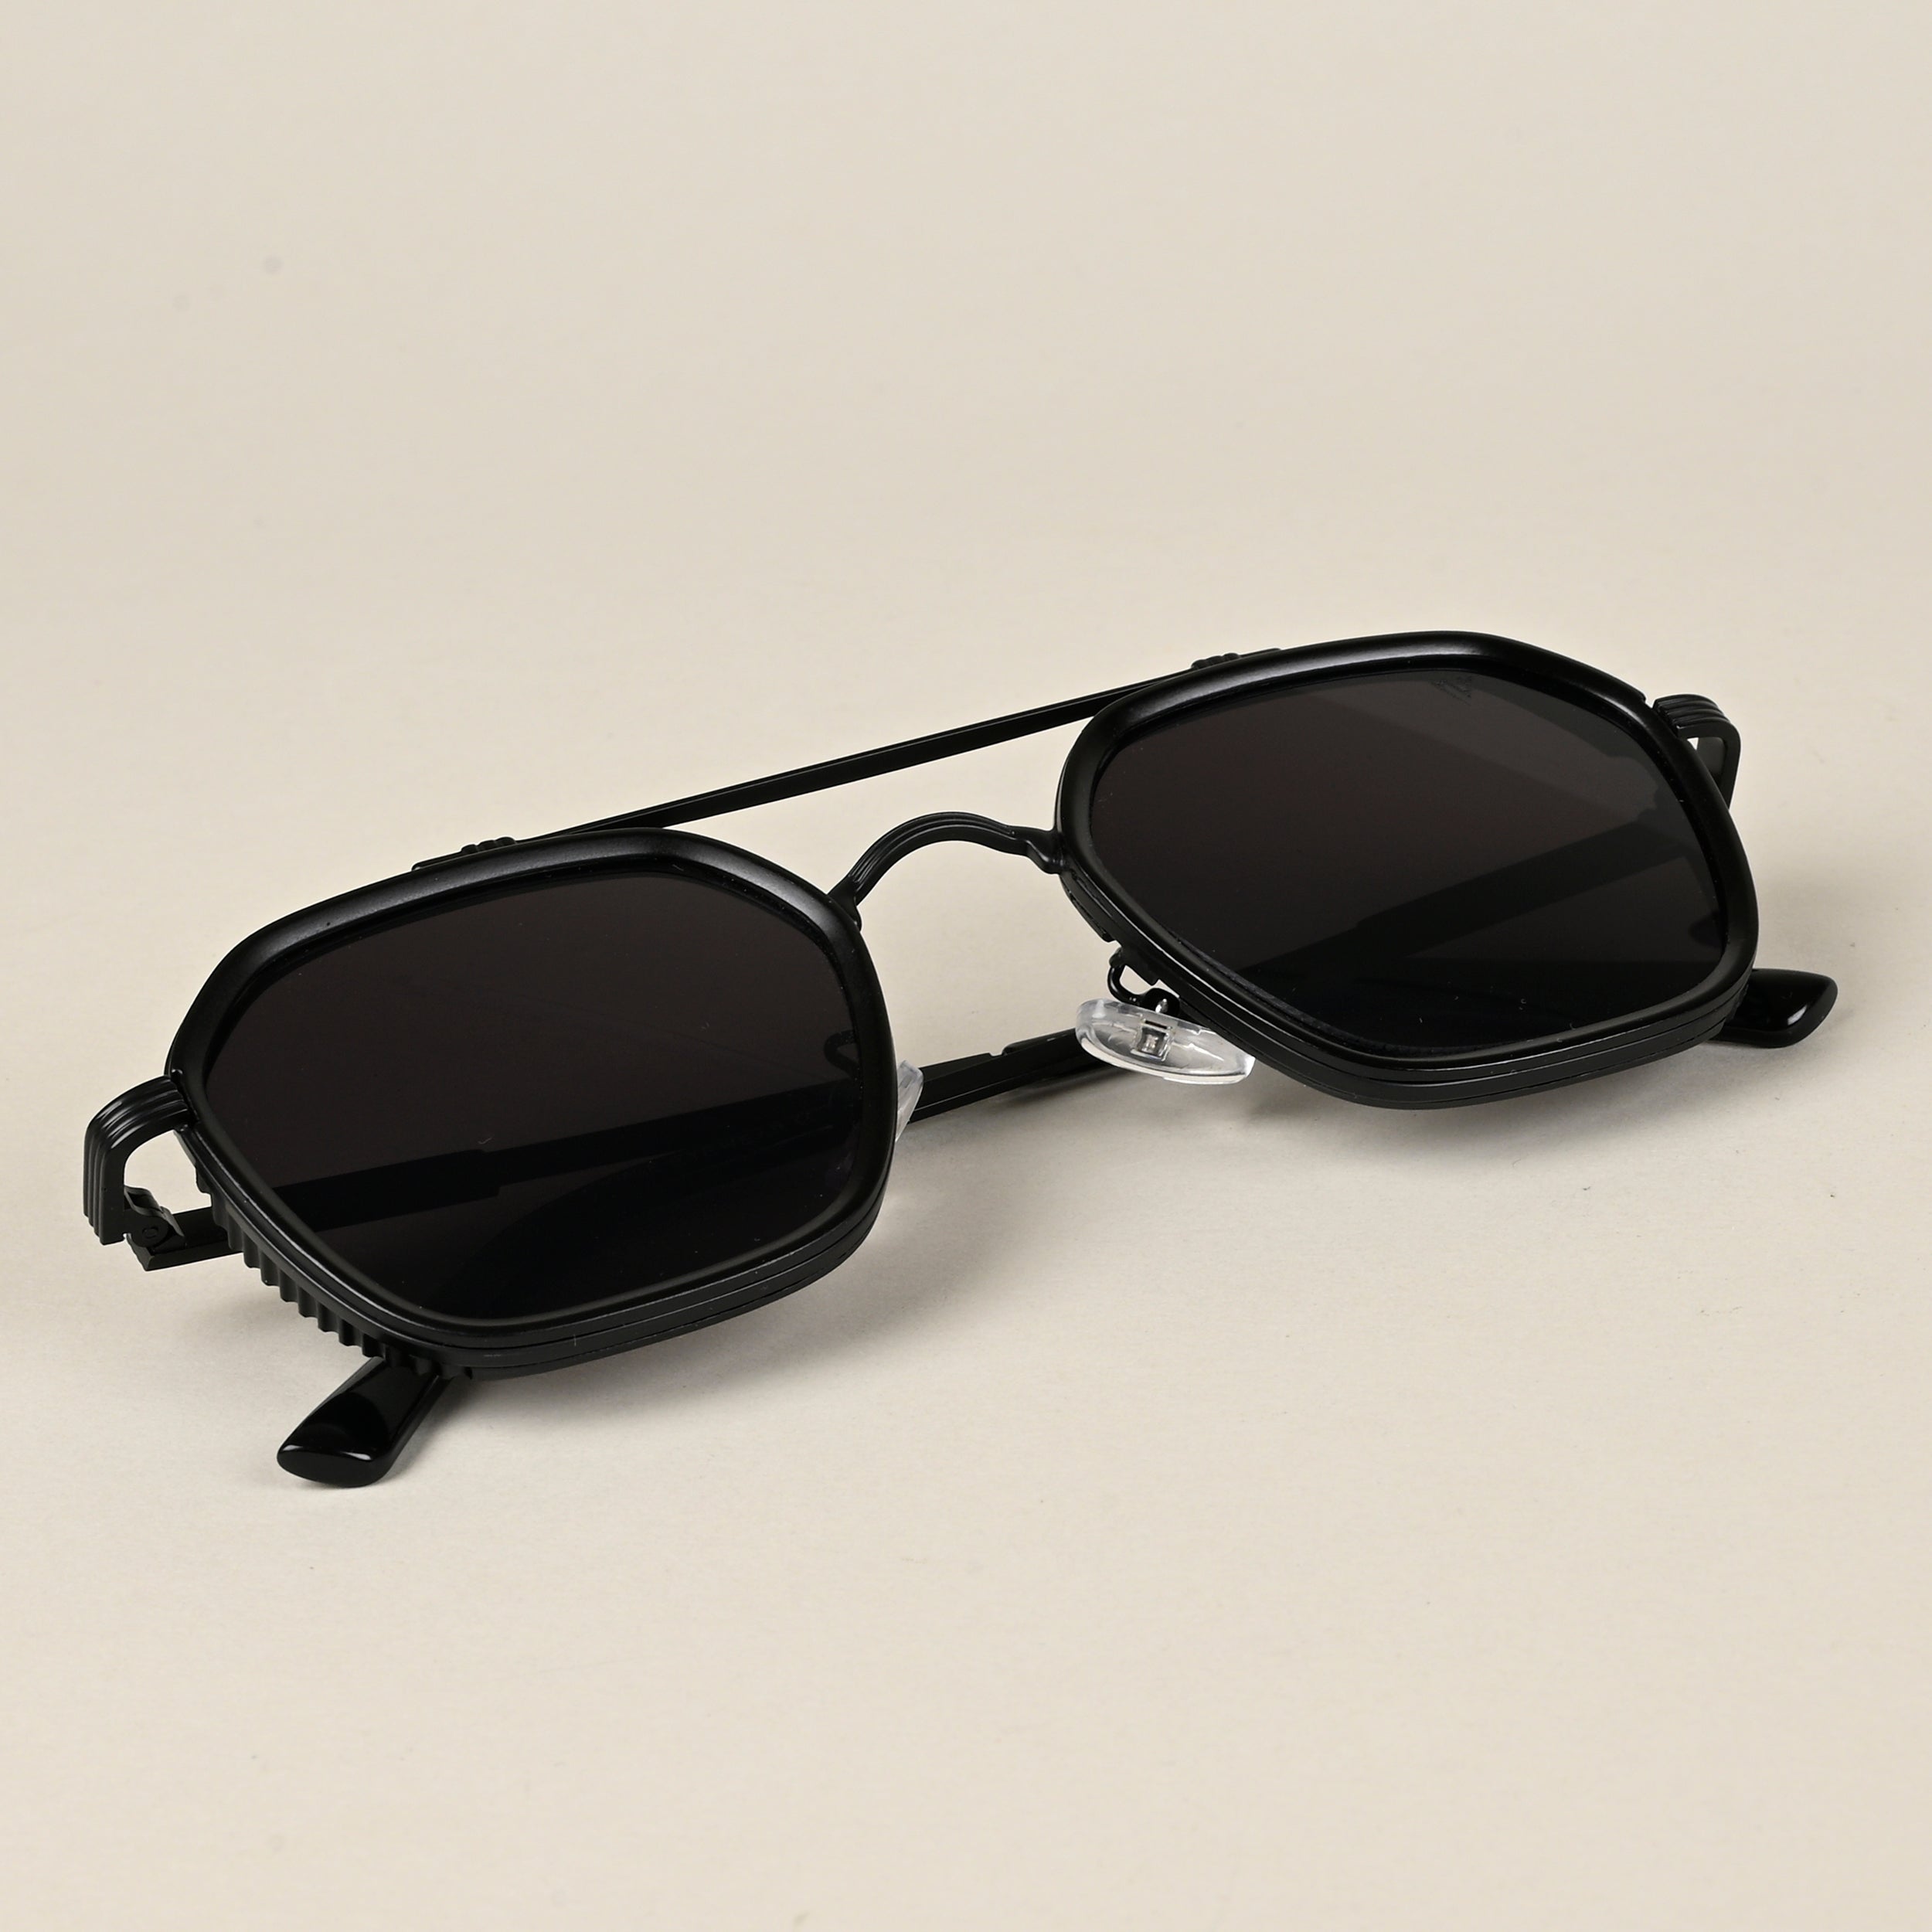 Voyage Wayfarer Sunglasses for Men & Women (Black Lens | Black Frame - MG5197)